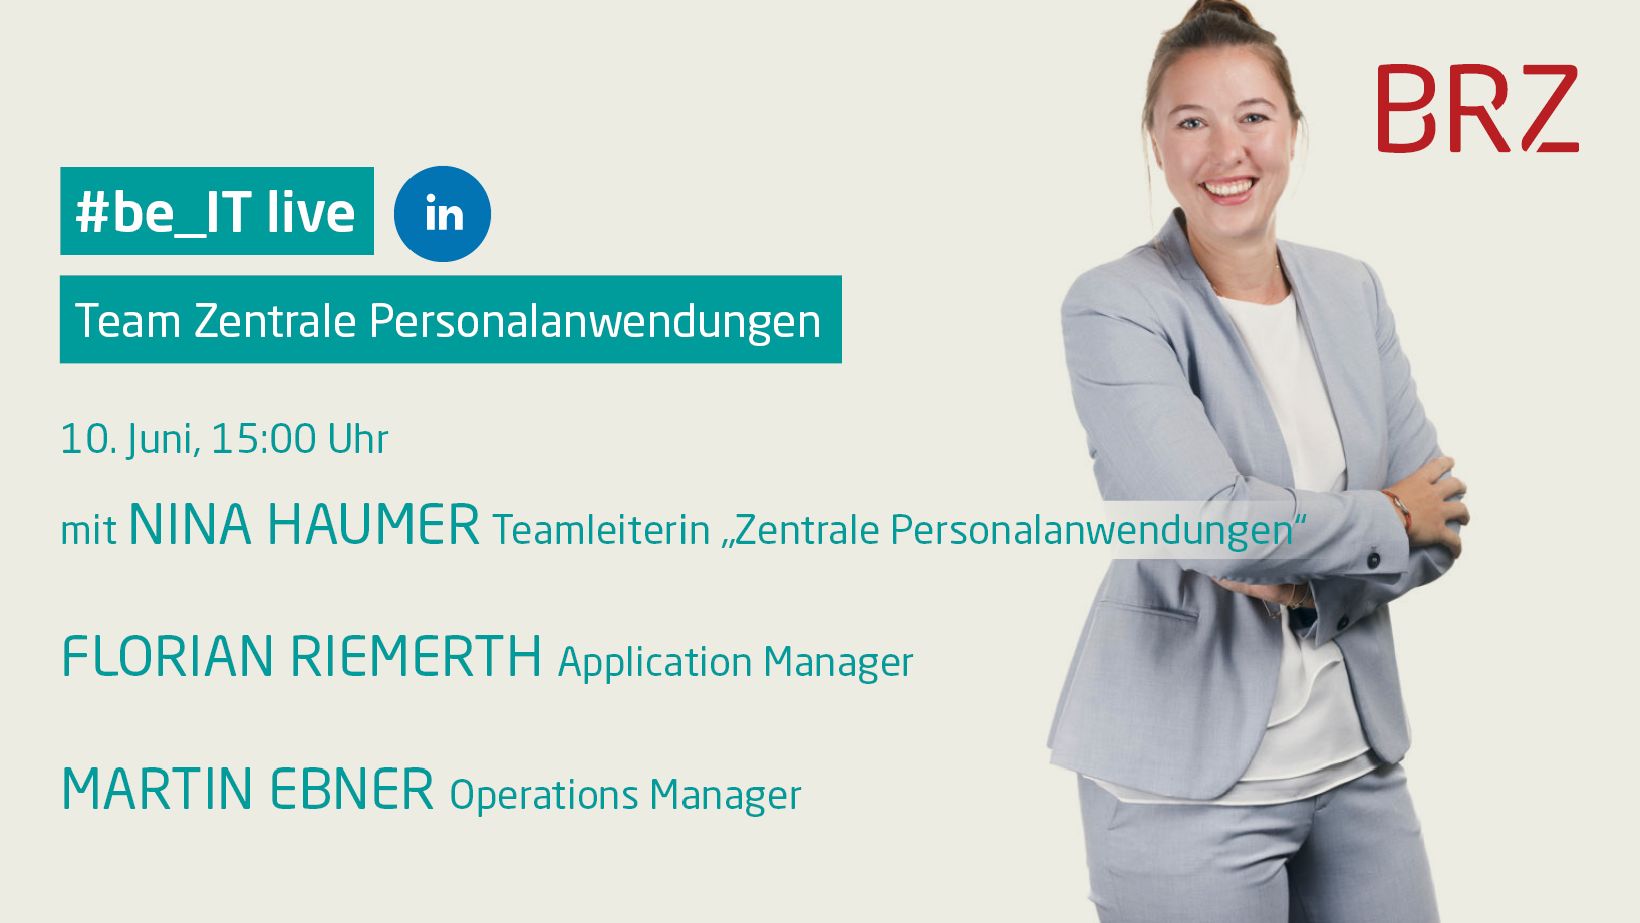 Auf LinkedIn live am 10. Juni um 15 Uhr mit Nina Haumer Teamleiterin Zentrale Personalanwendungen, Florian Riemerth Application Manager und Martin Ebner Operations Manager